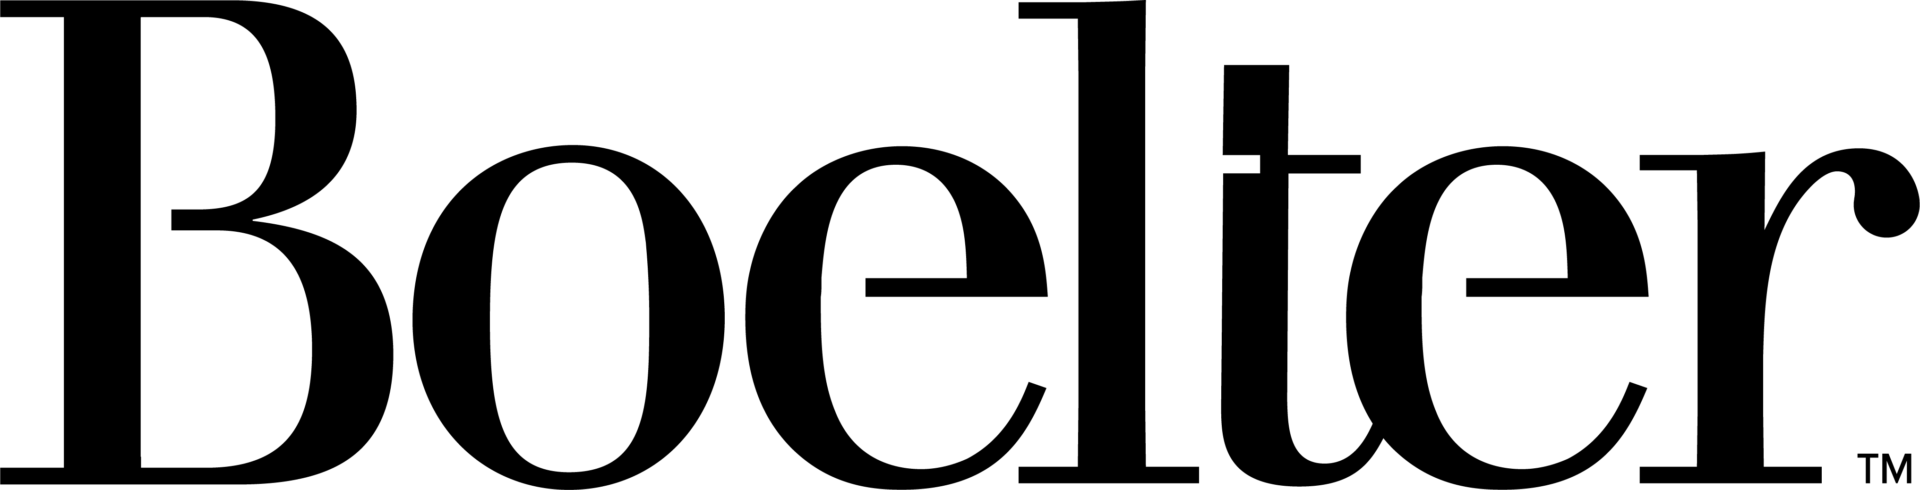 Boelter_Logo_Black